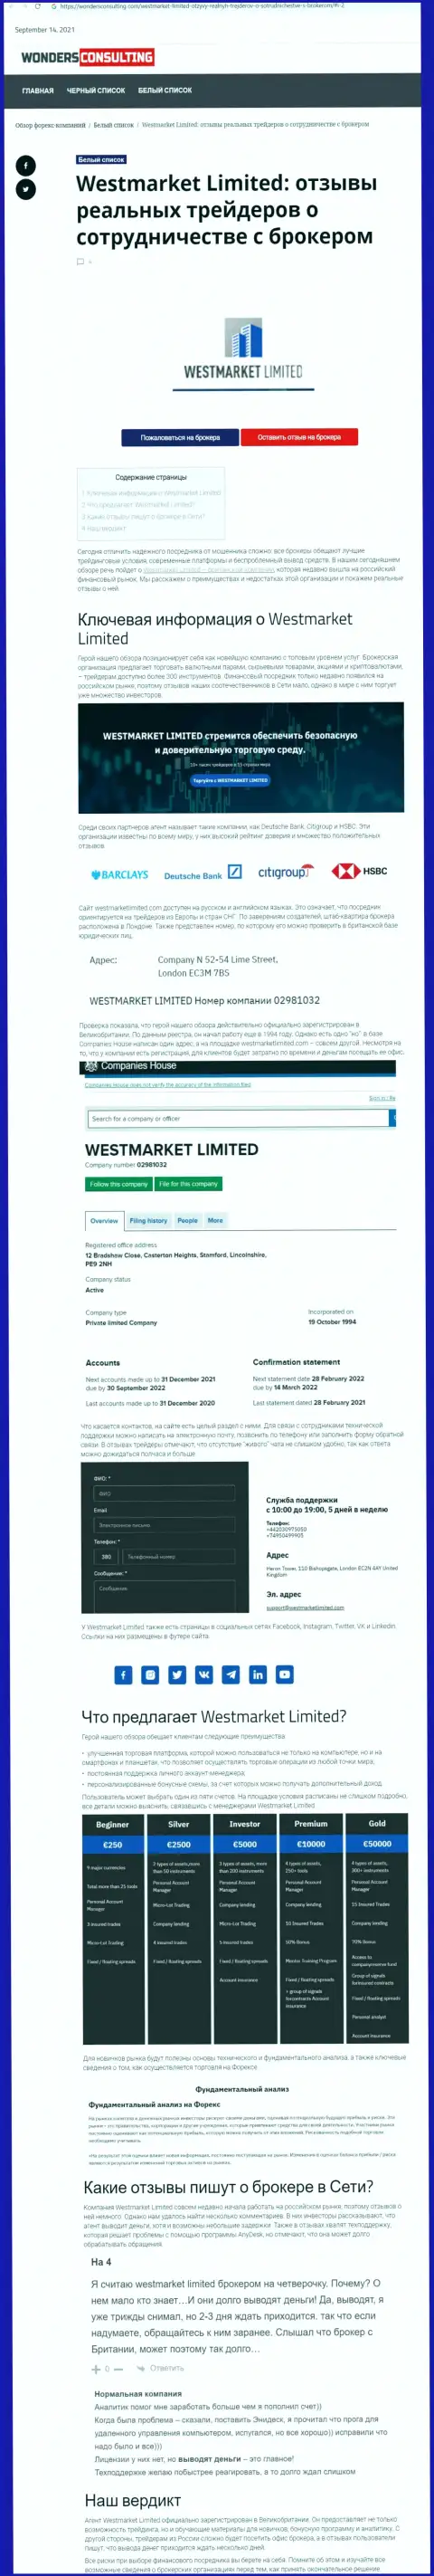 Информация о форекс брокерской компании WestMarketLimited Com на веб-ресурсе вондерконсалтинг ком